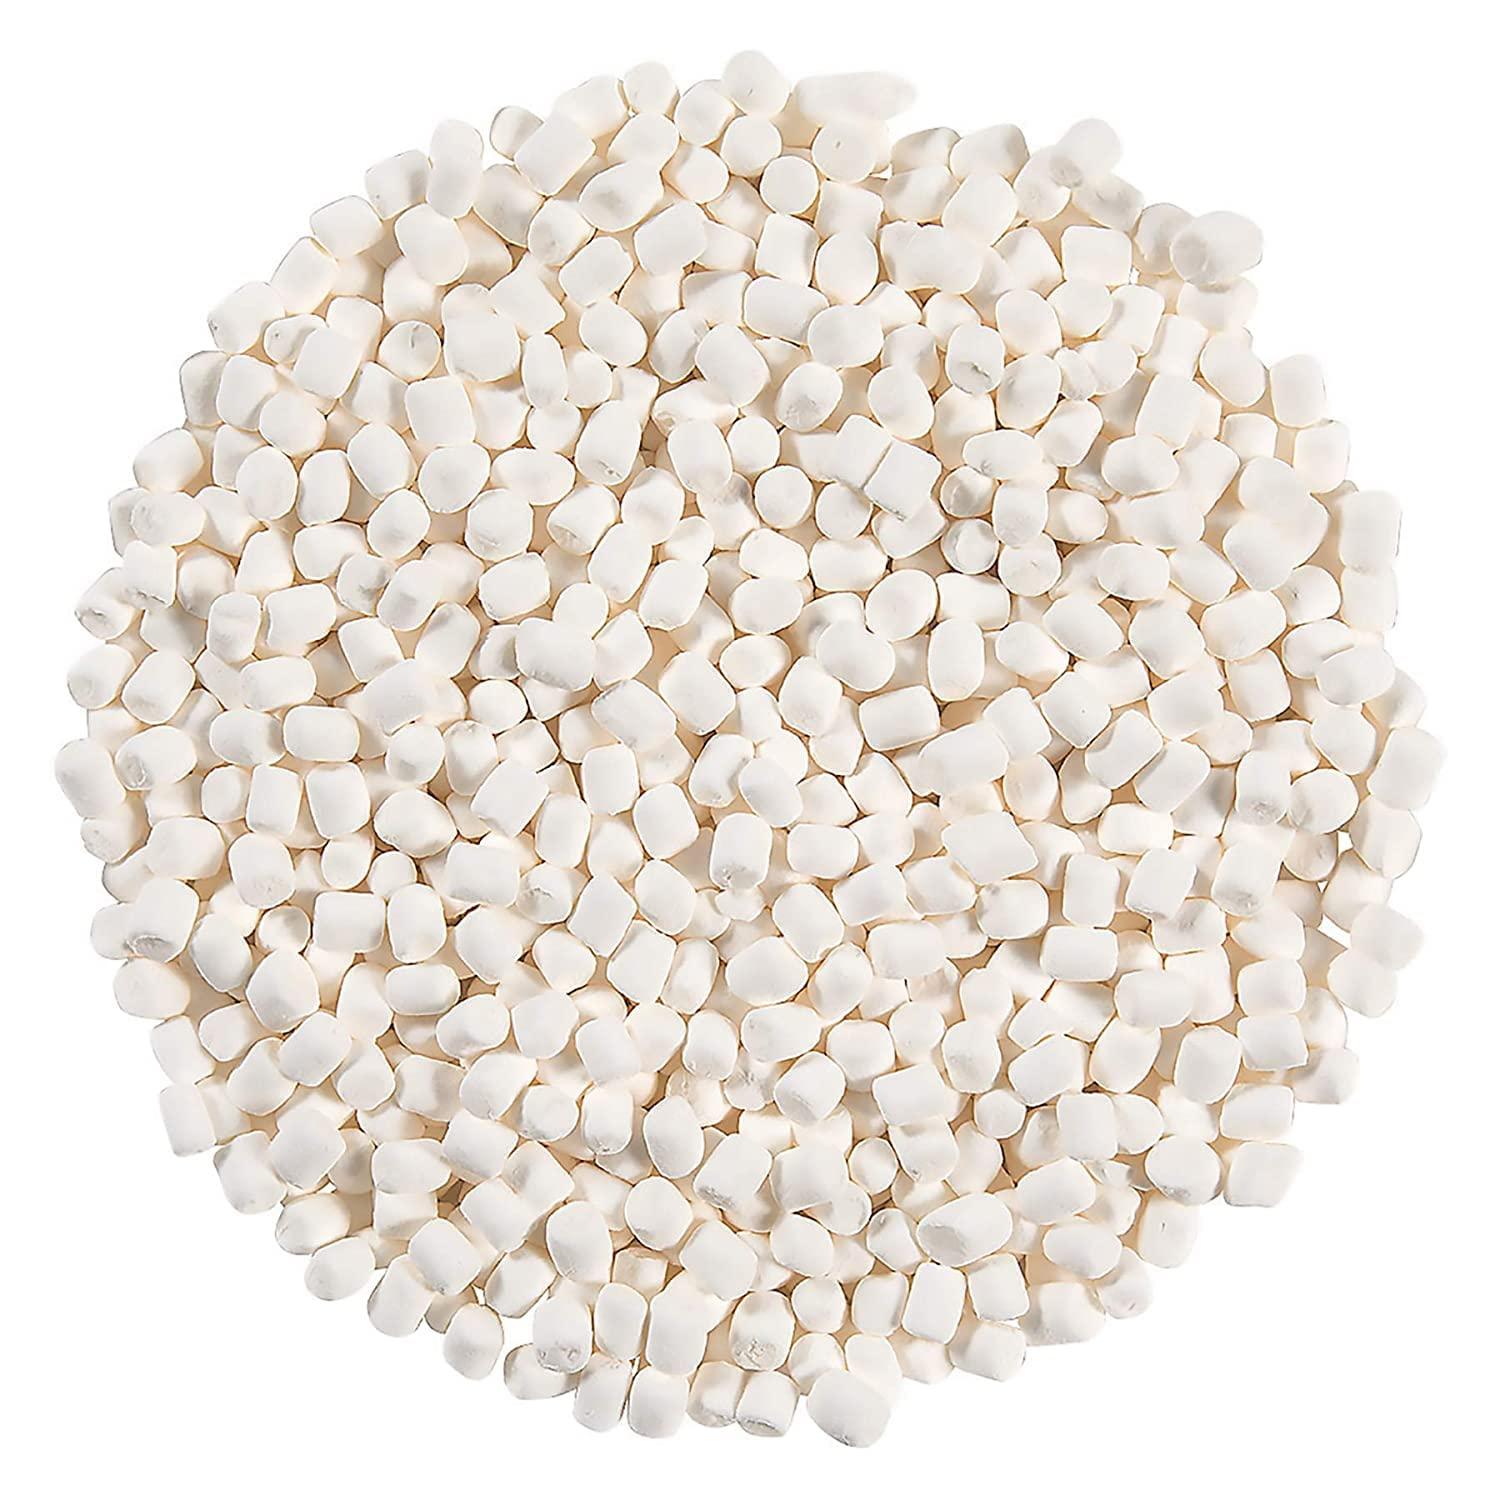 Marshmallow Mini White 1# Bag